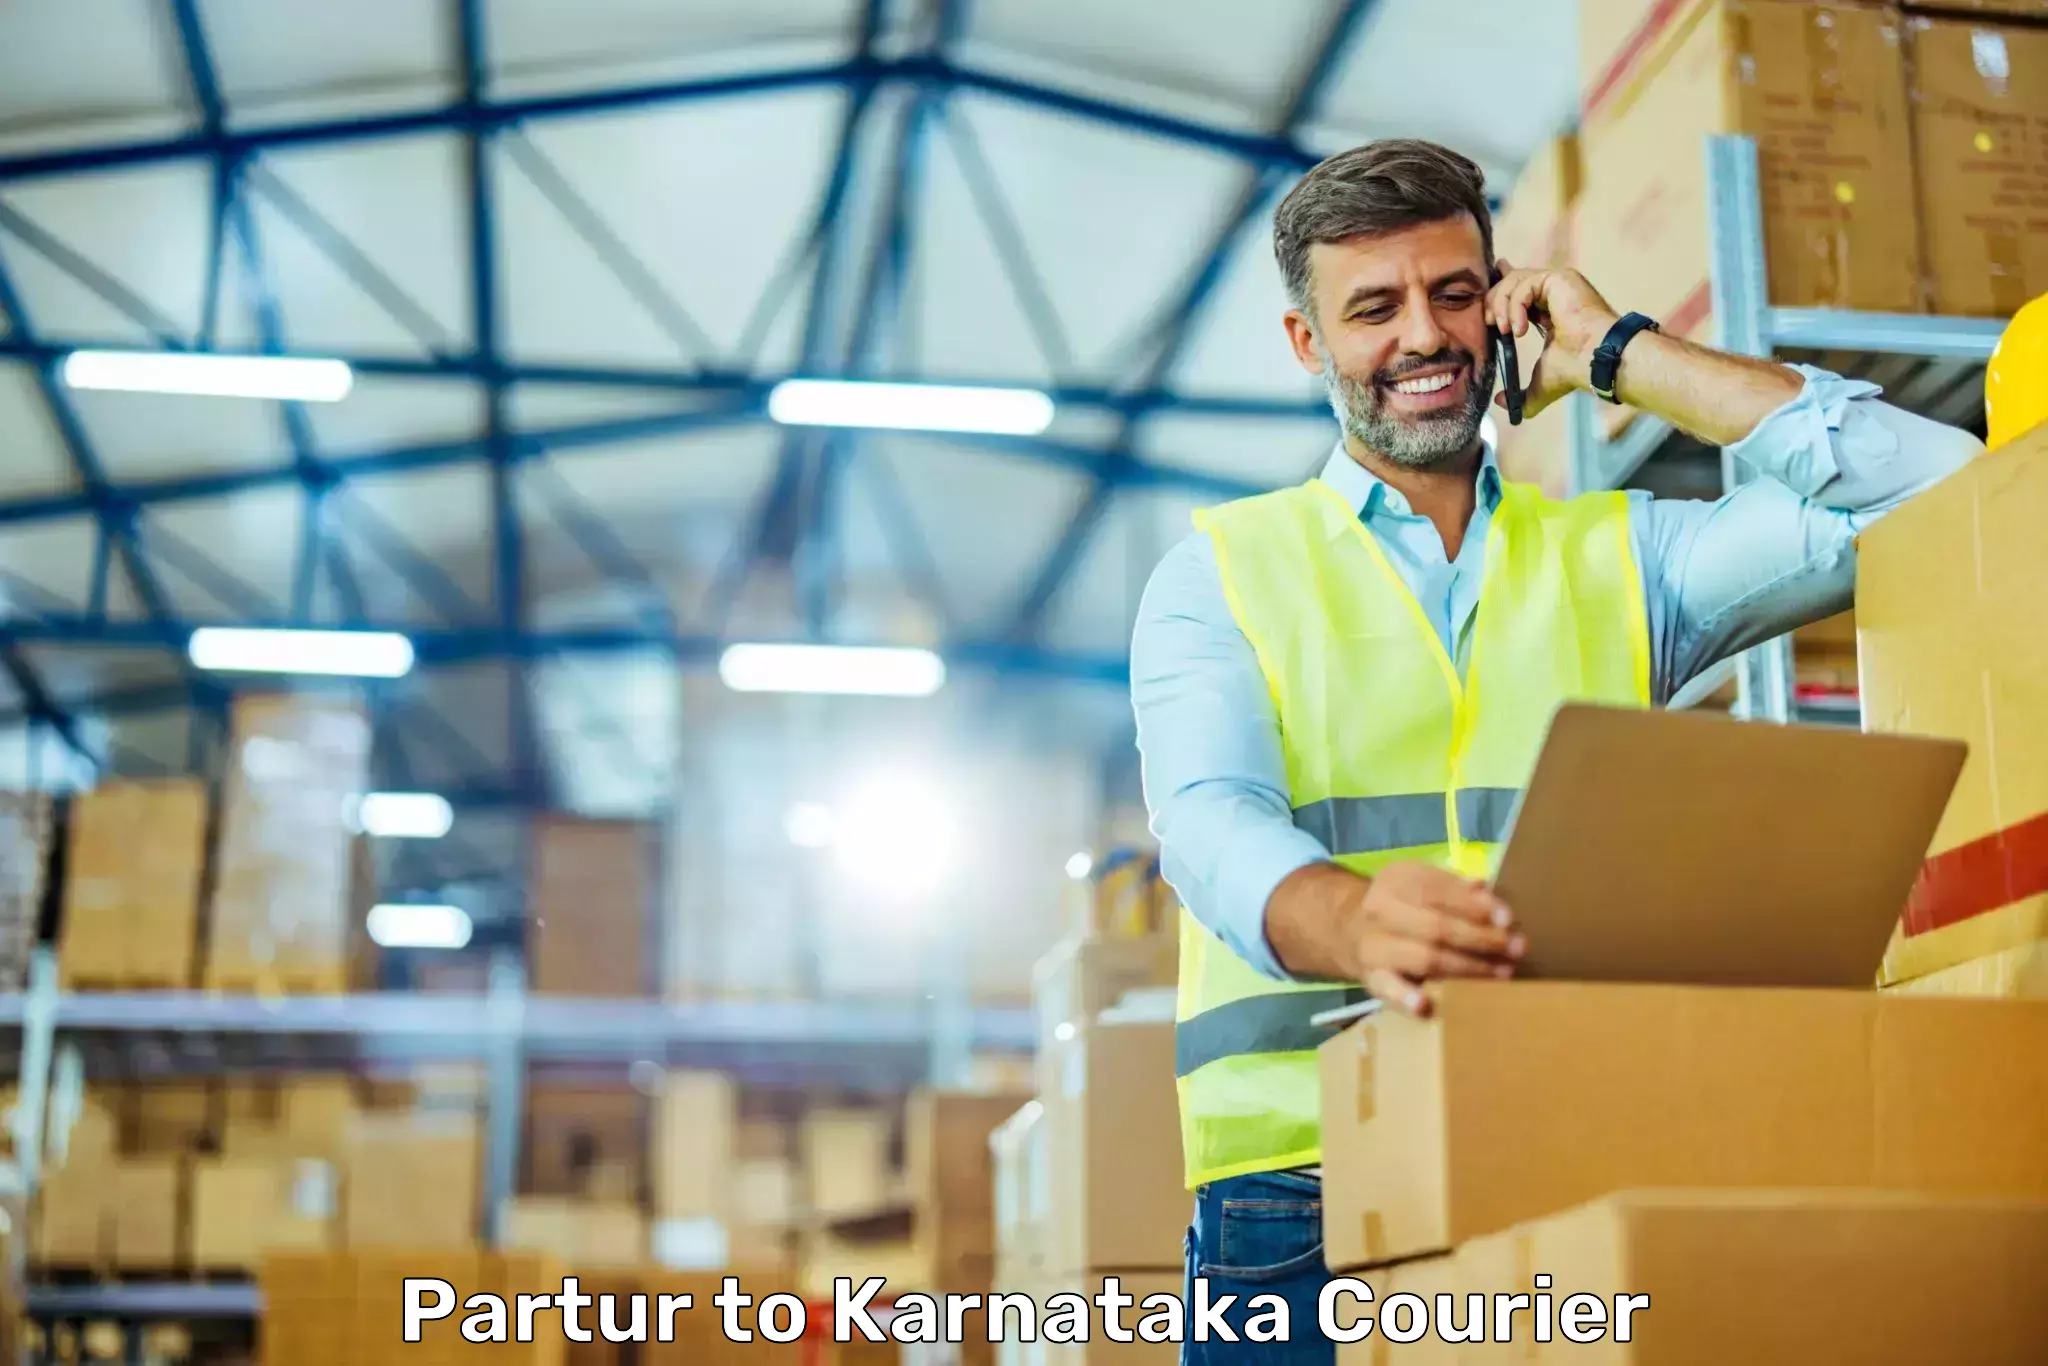 Premium courier solutions Partur to Kolar